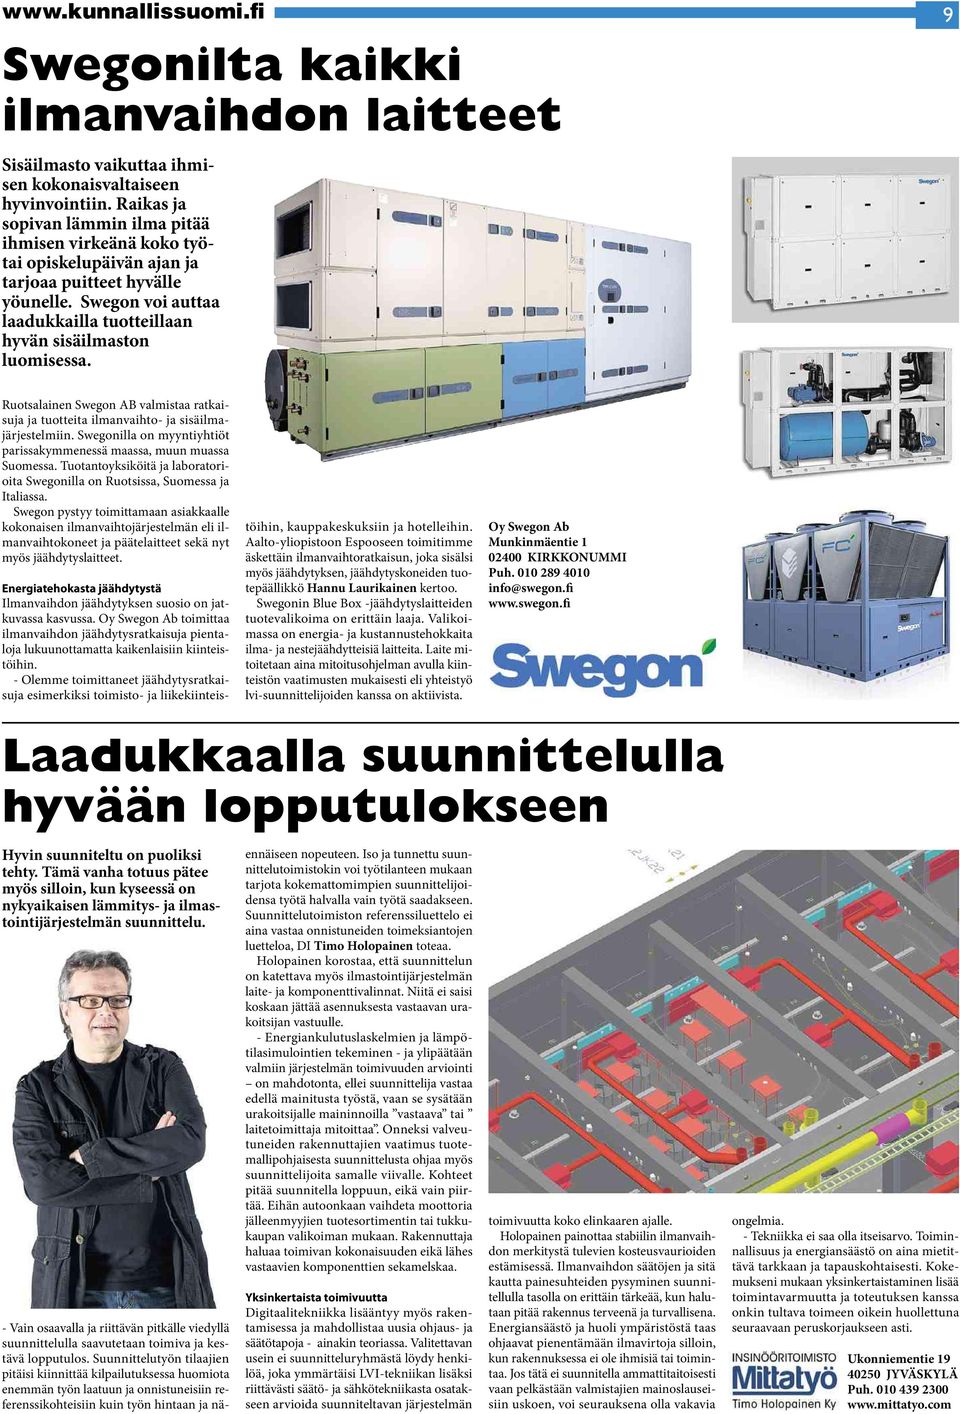 Ruotsalainen Swegon AB valmistaa ratkaisuja ja tuotteita ilmanvaihto- ja sisäilmajärjestelmiin. Swegonilla onmyyntiyhtiöt parissakymmenessä maassa,muunmuassa Suomessa.